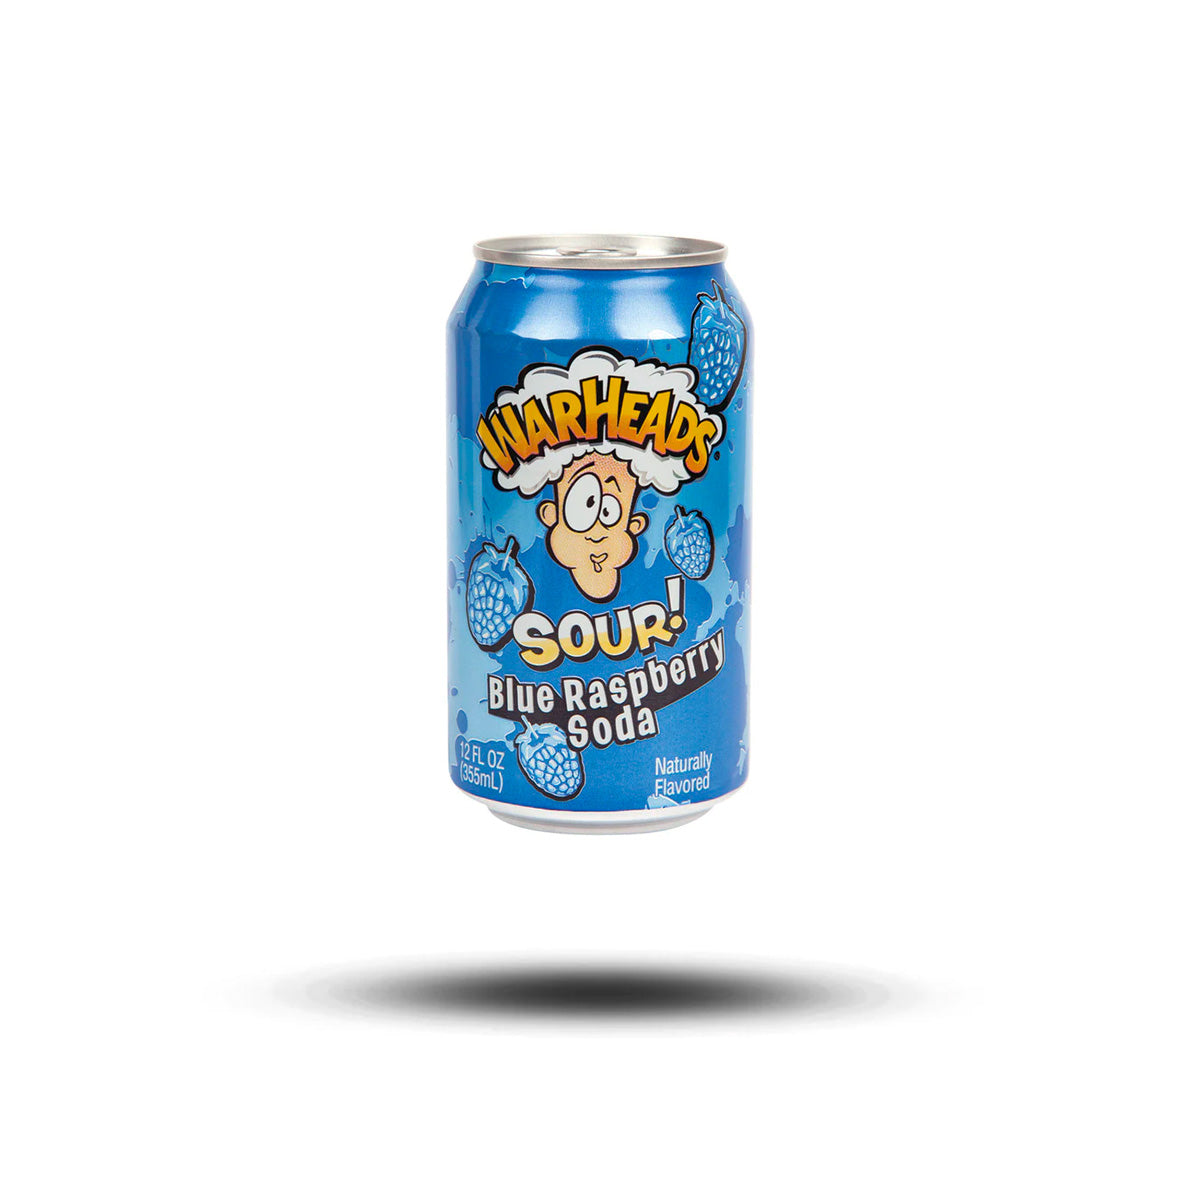 Warheads Sour Blue Raspberry Soda 355ml-Warheads-SNACK SHOP AUSTRIA